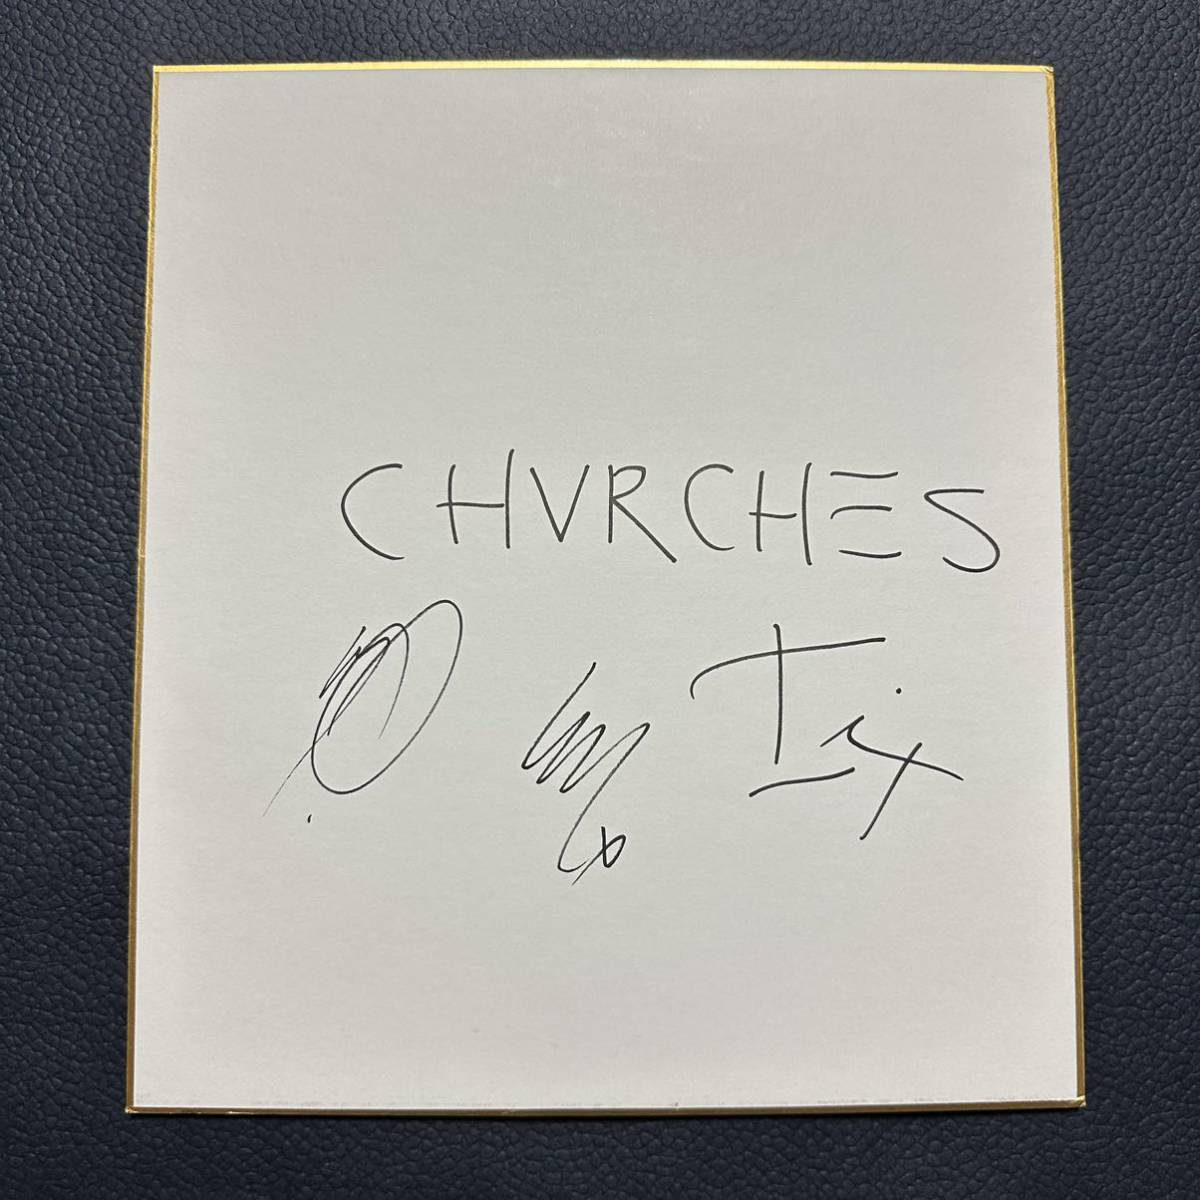 CHVRCHES Papier coloré dédicacé Églises Rock Band Album CD Maneskin Mneskin Marshmello Marshmello, Biens de talent, signe